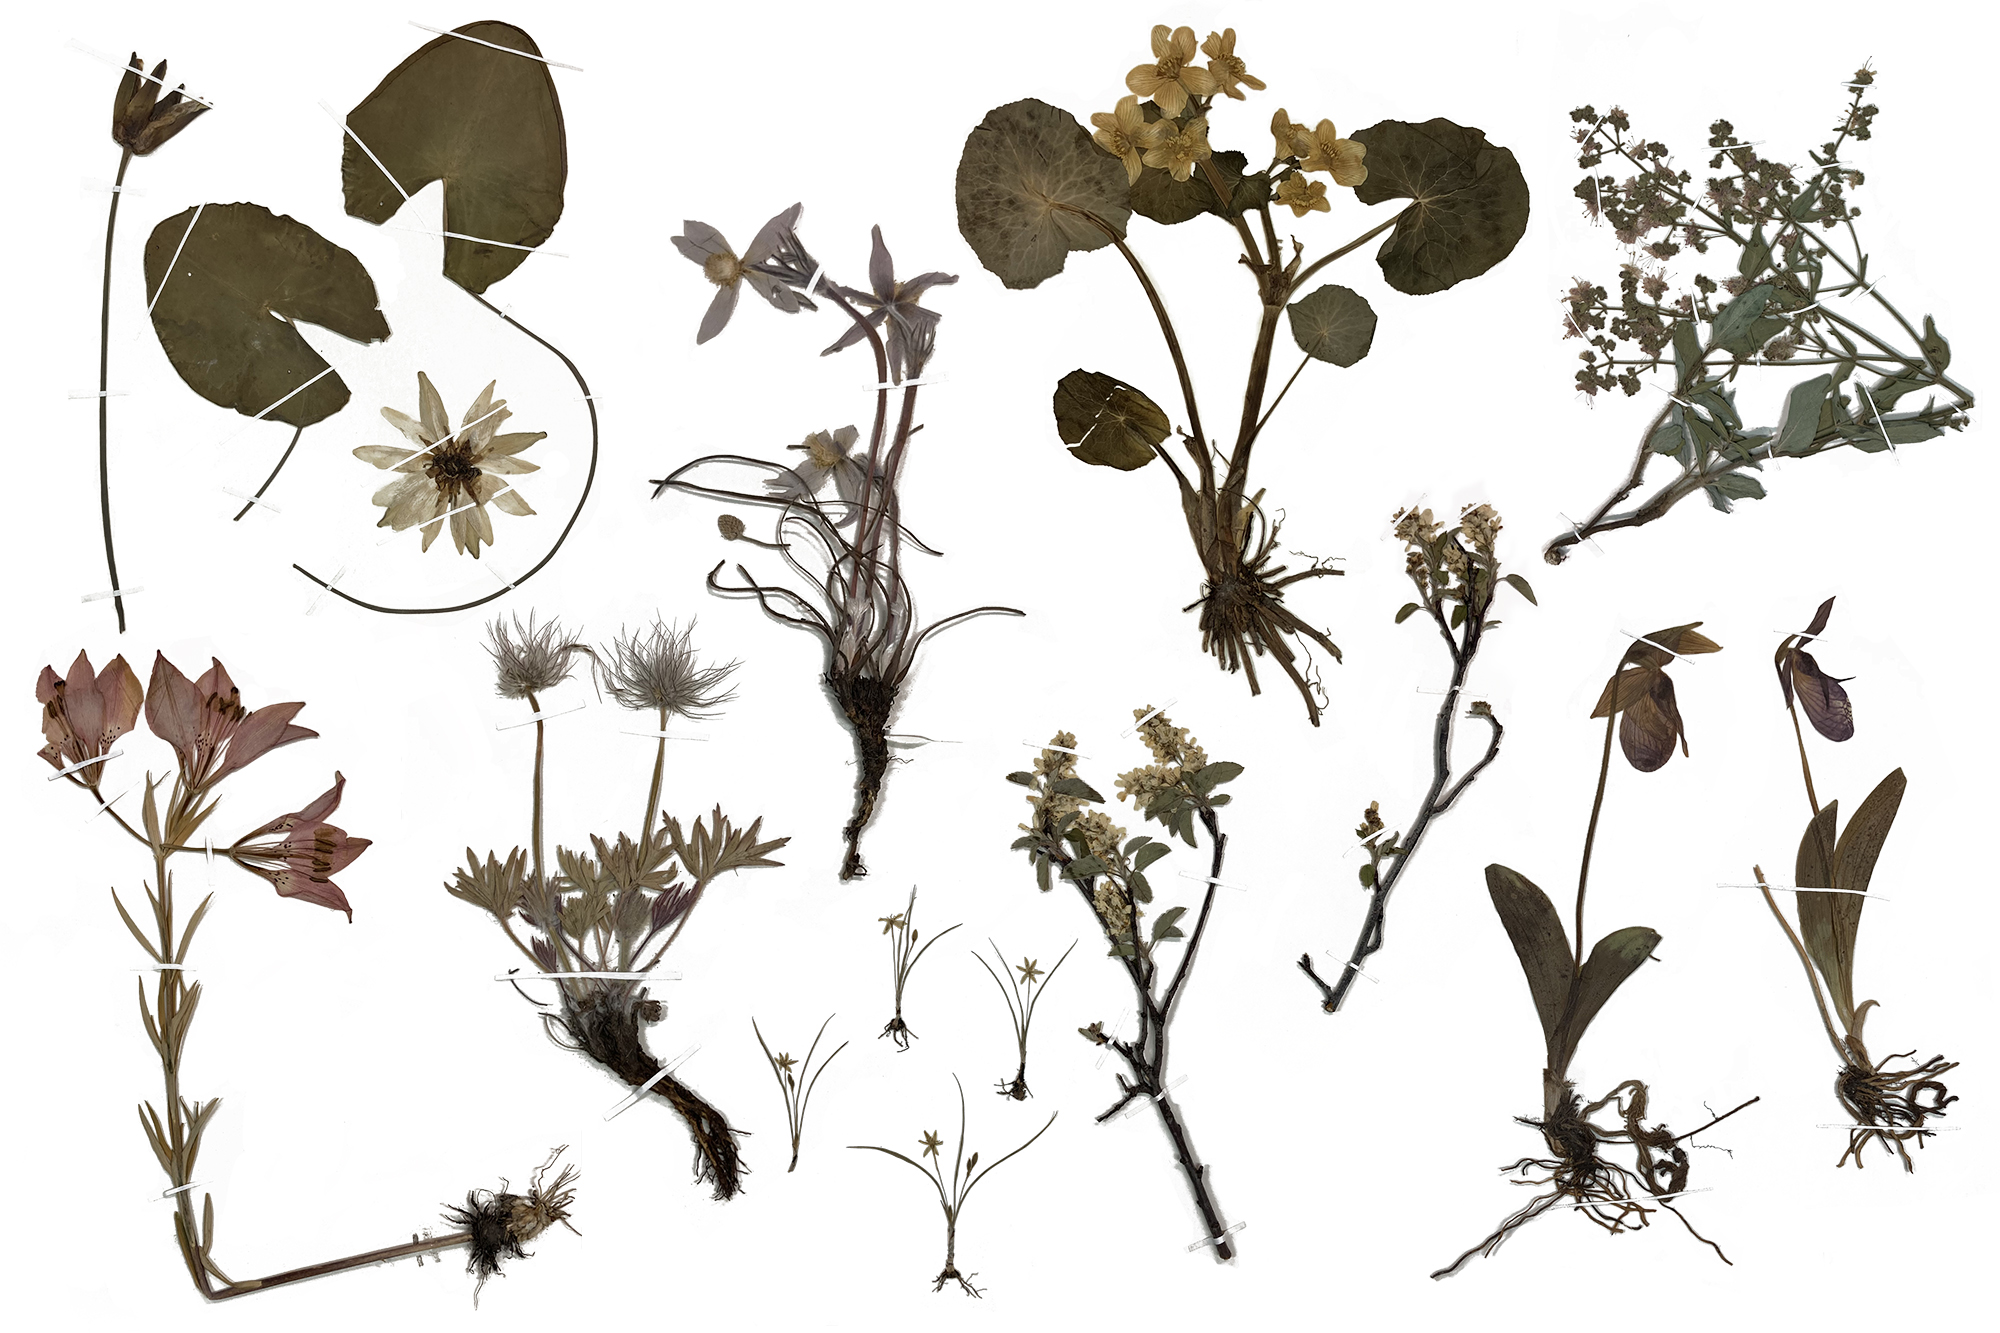 Herbarium specimens.